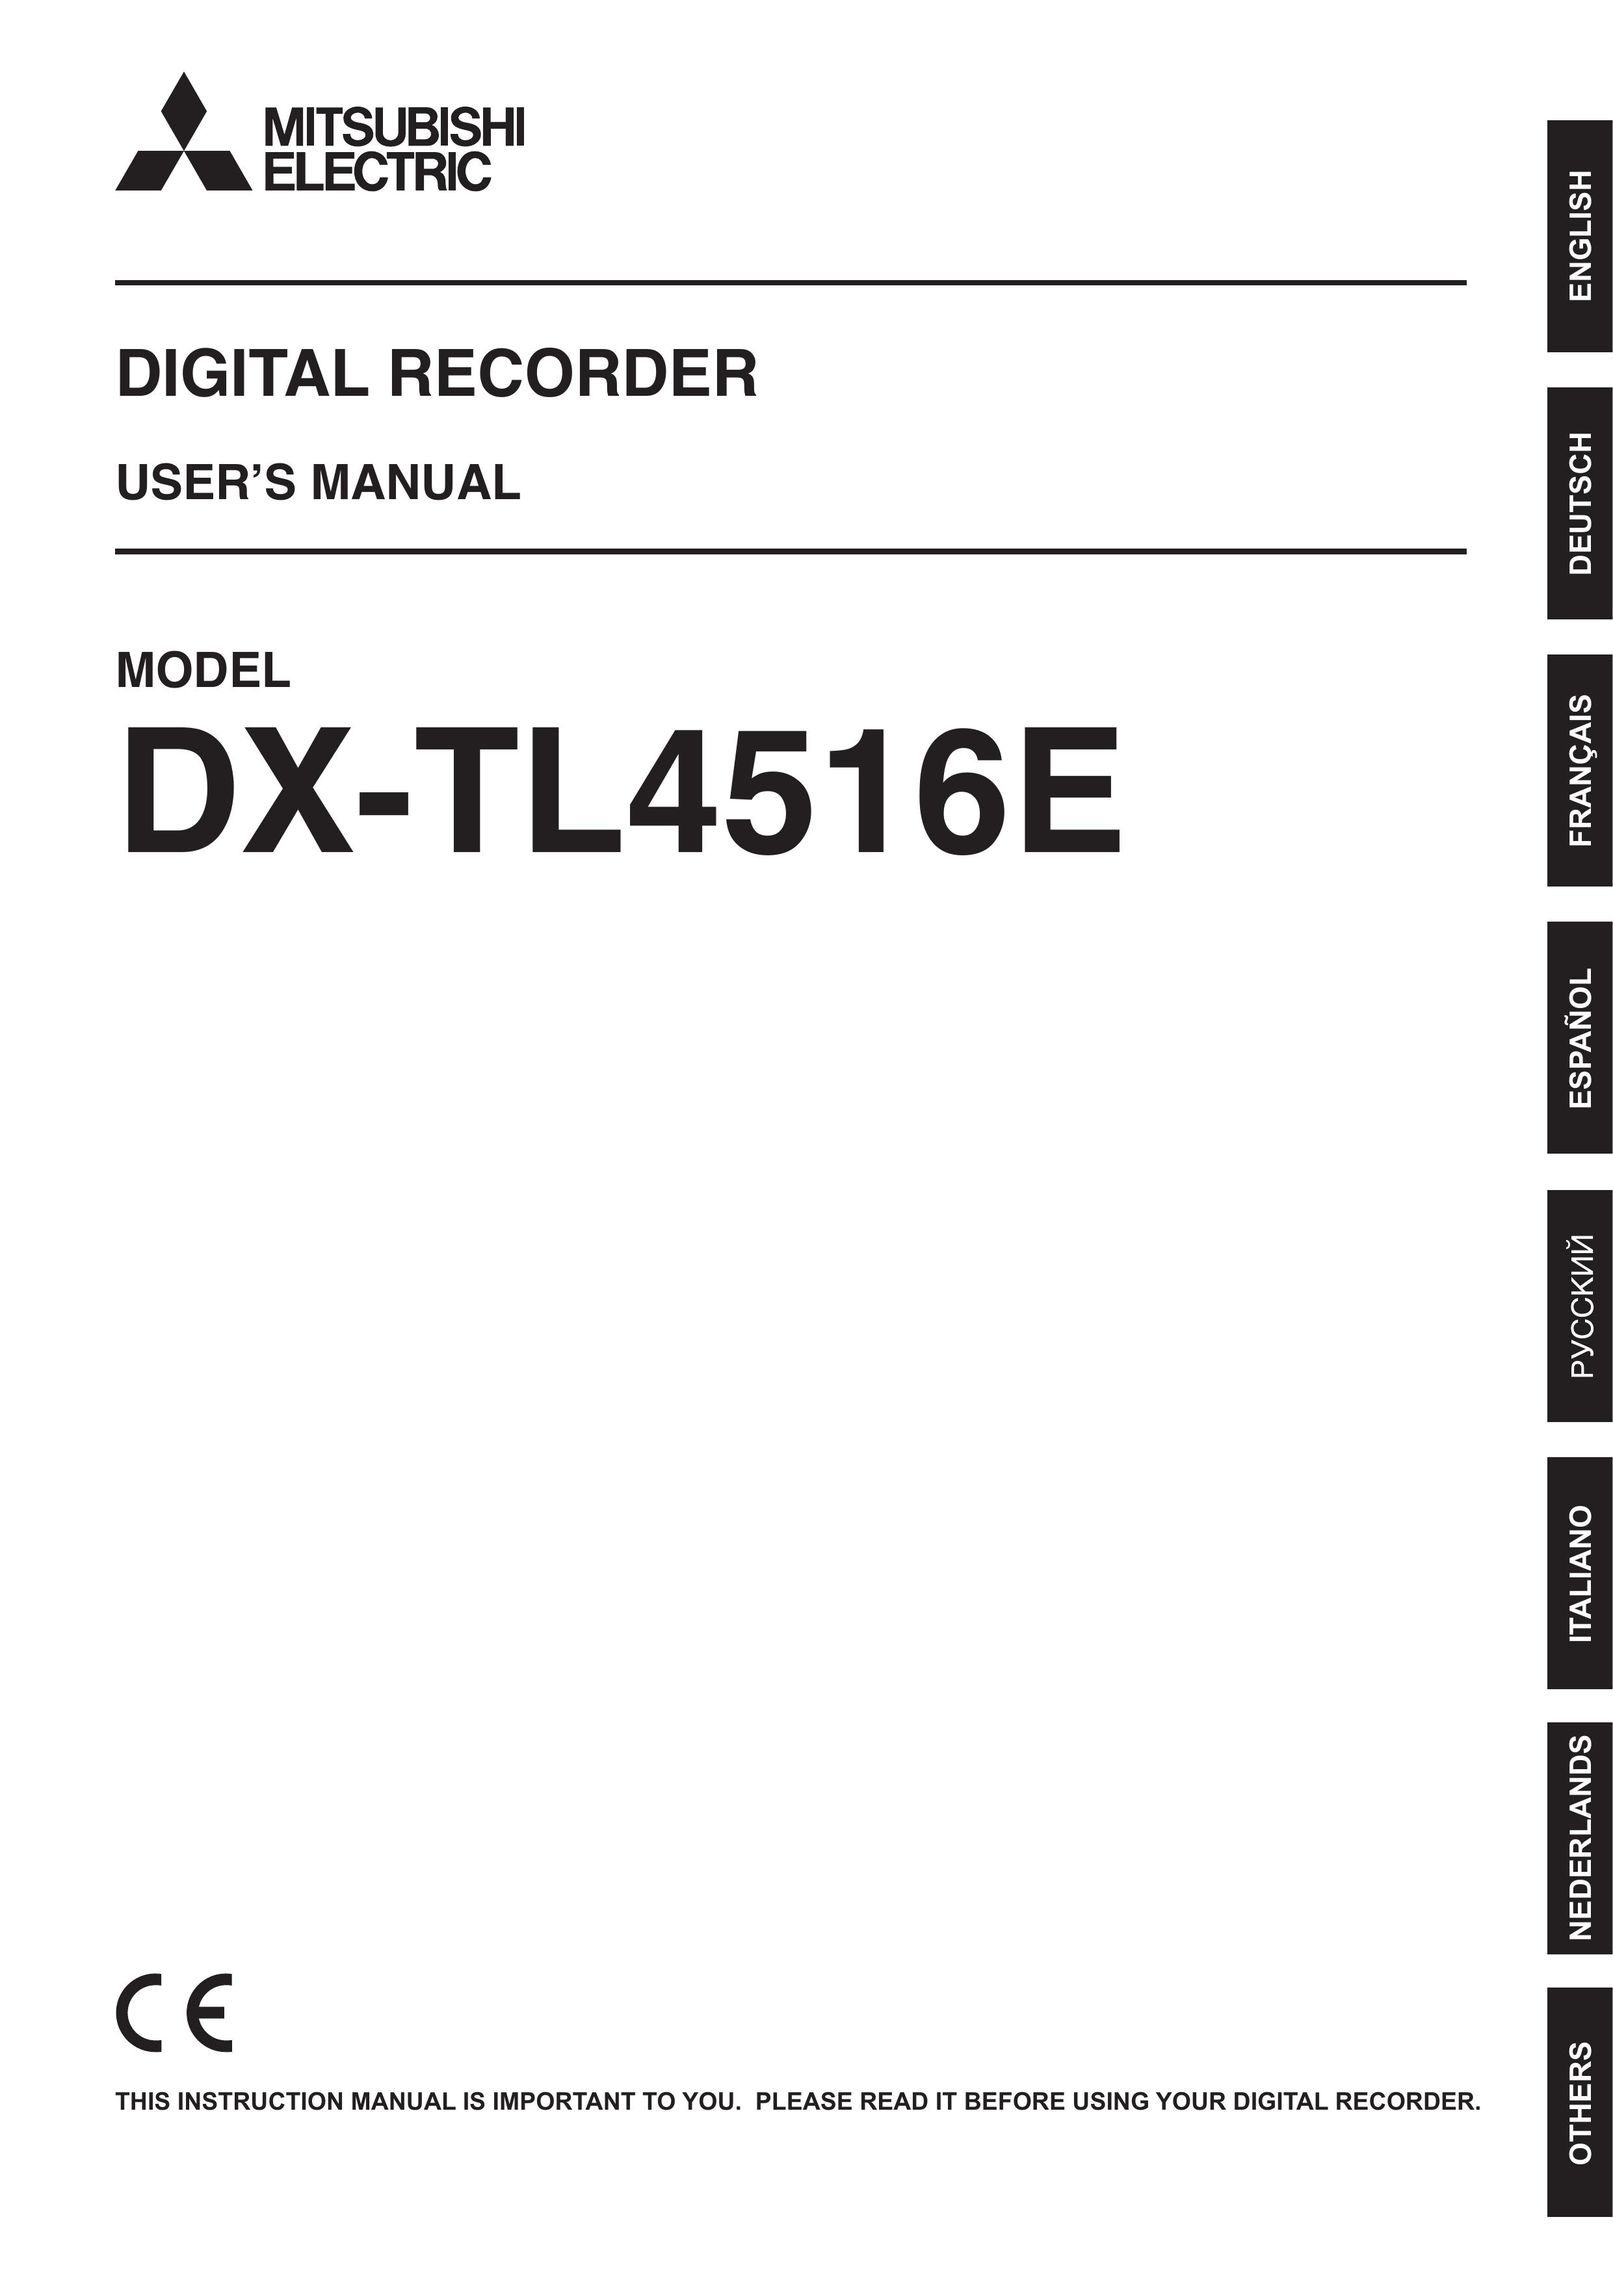 Nikon DX-TL4516E DVR User Manual